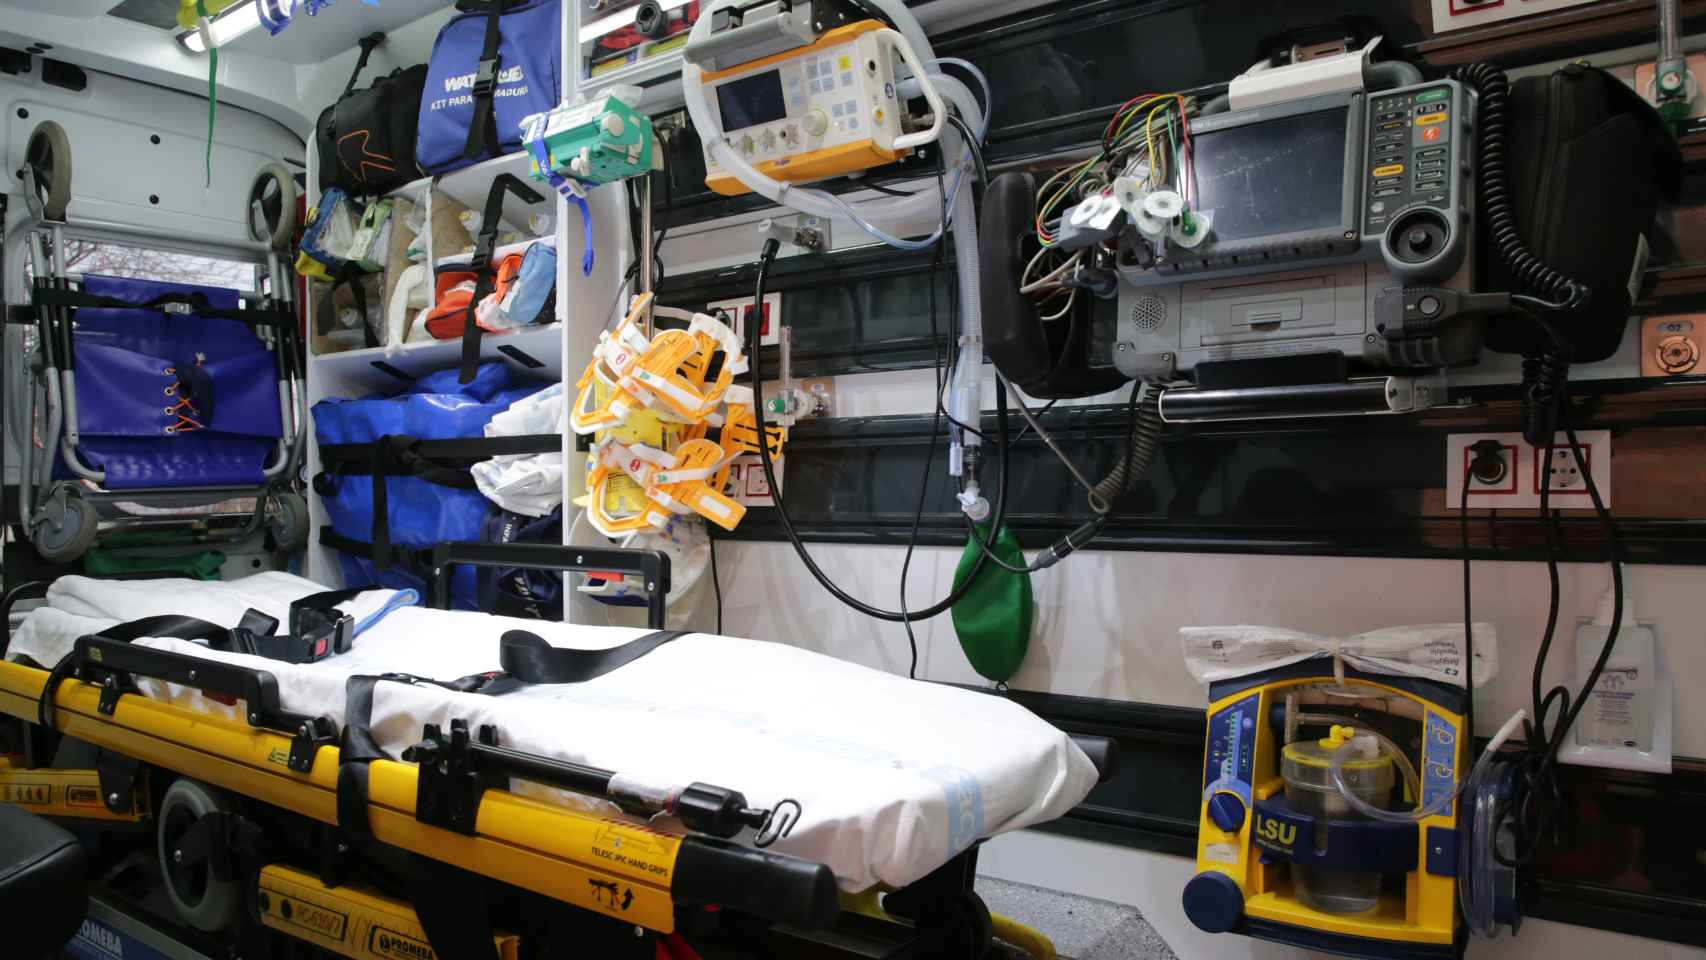 Interior de una ambulancia del 112